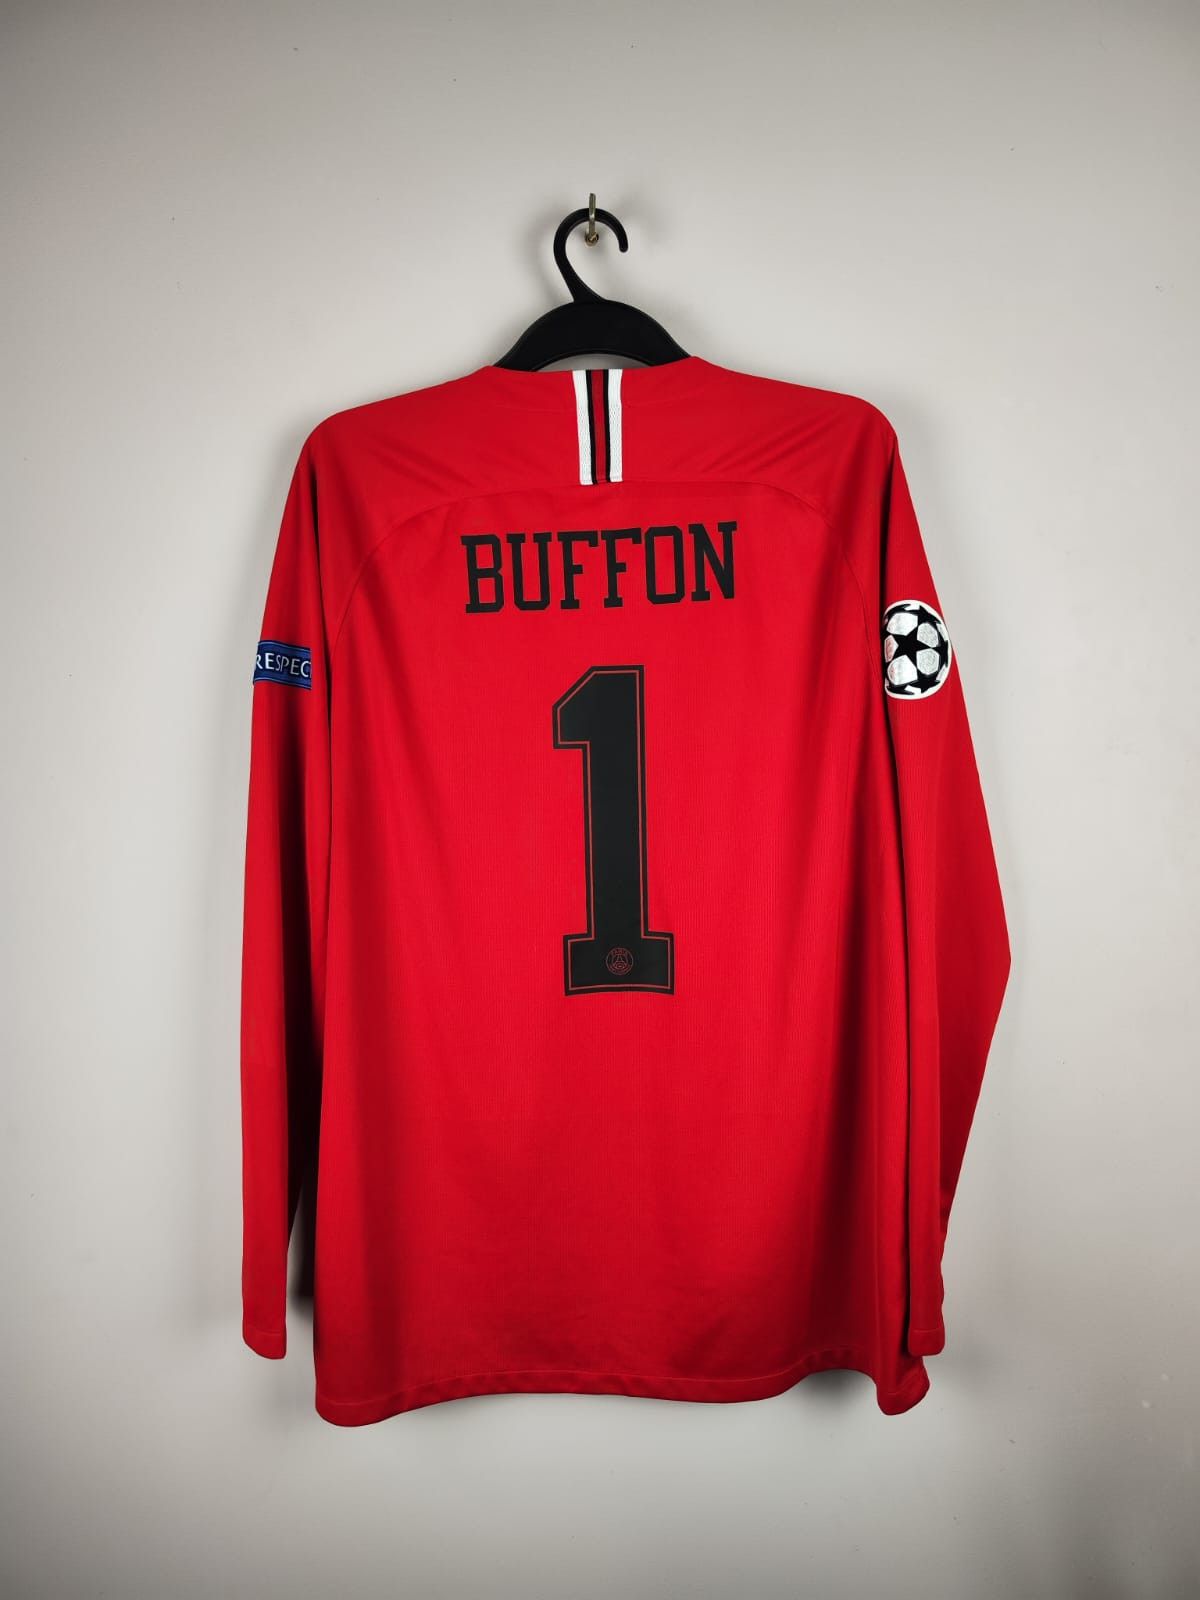 Jordan Brand Buffon #1 Paris Saint-Germain 2018/19 Longsleeve